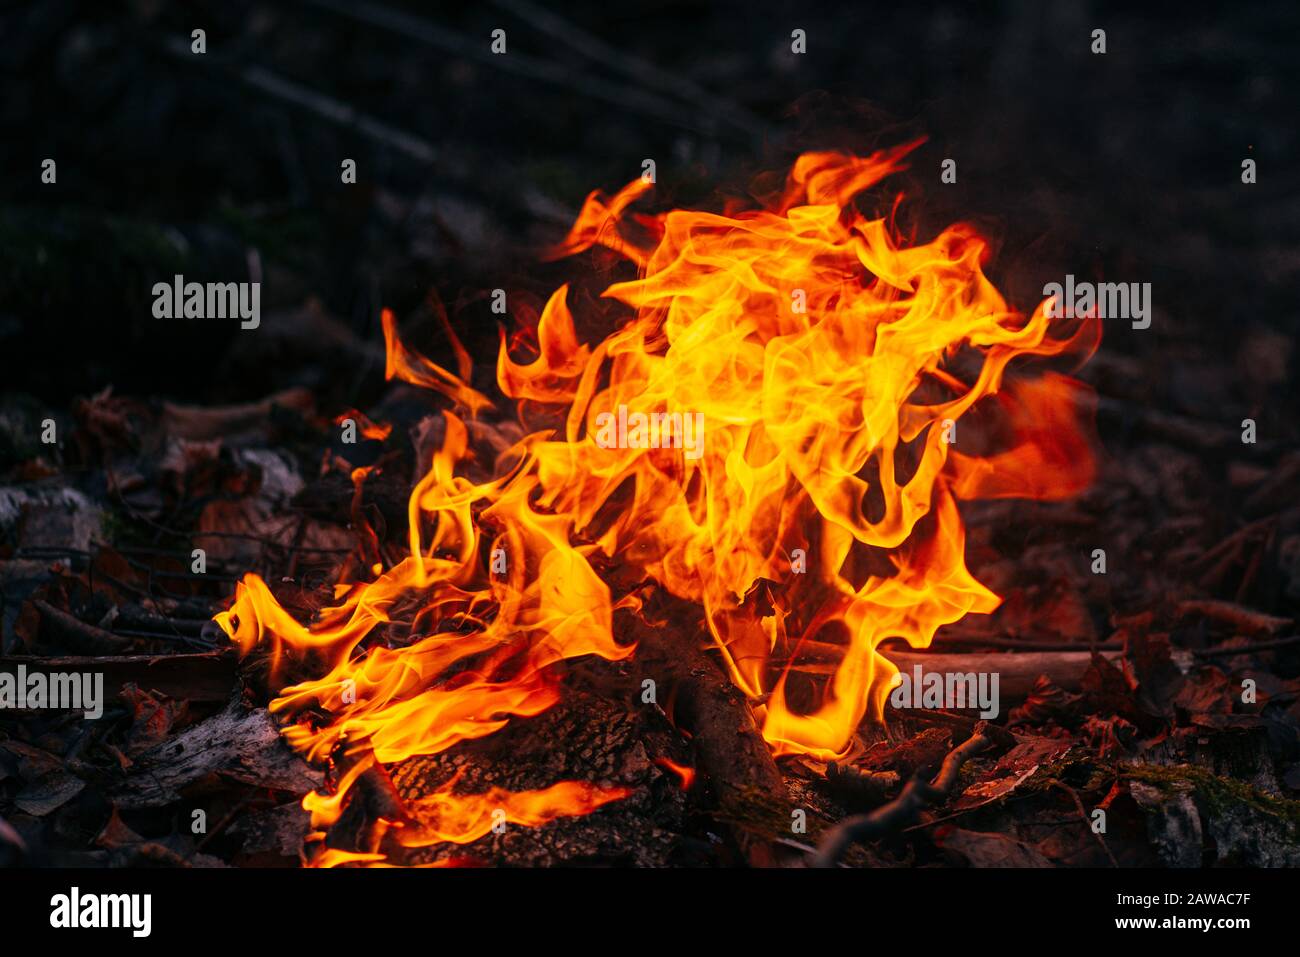 Brennendes Holz am Abend im Wald. Lagerfeuer im touristischen Camp in der Natur. Flamme und Feuer Funken auf dunklen abstrakten Hintergrund. Konzept der Sicherheit und Stockfoto